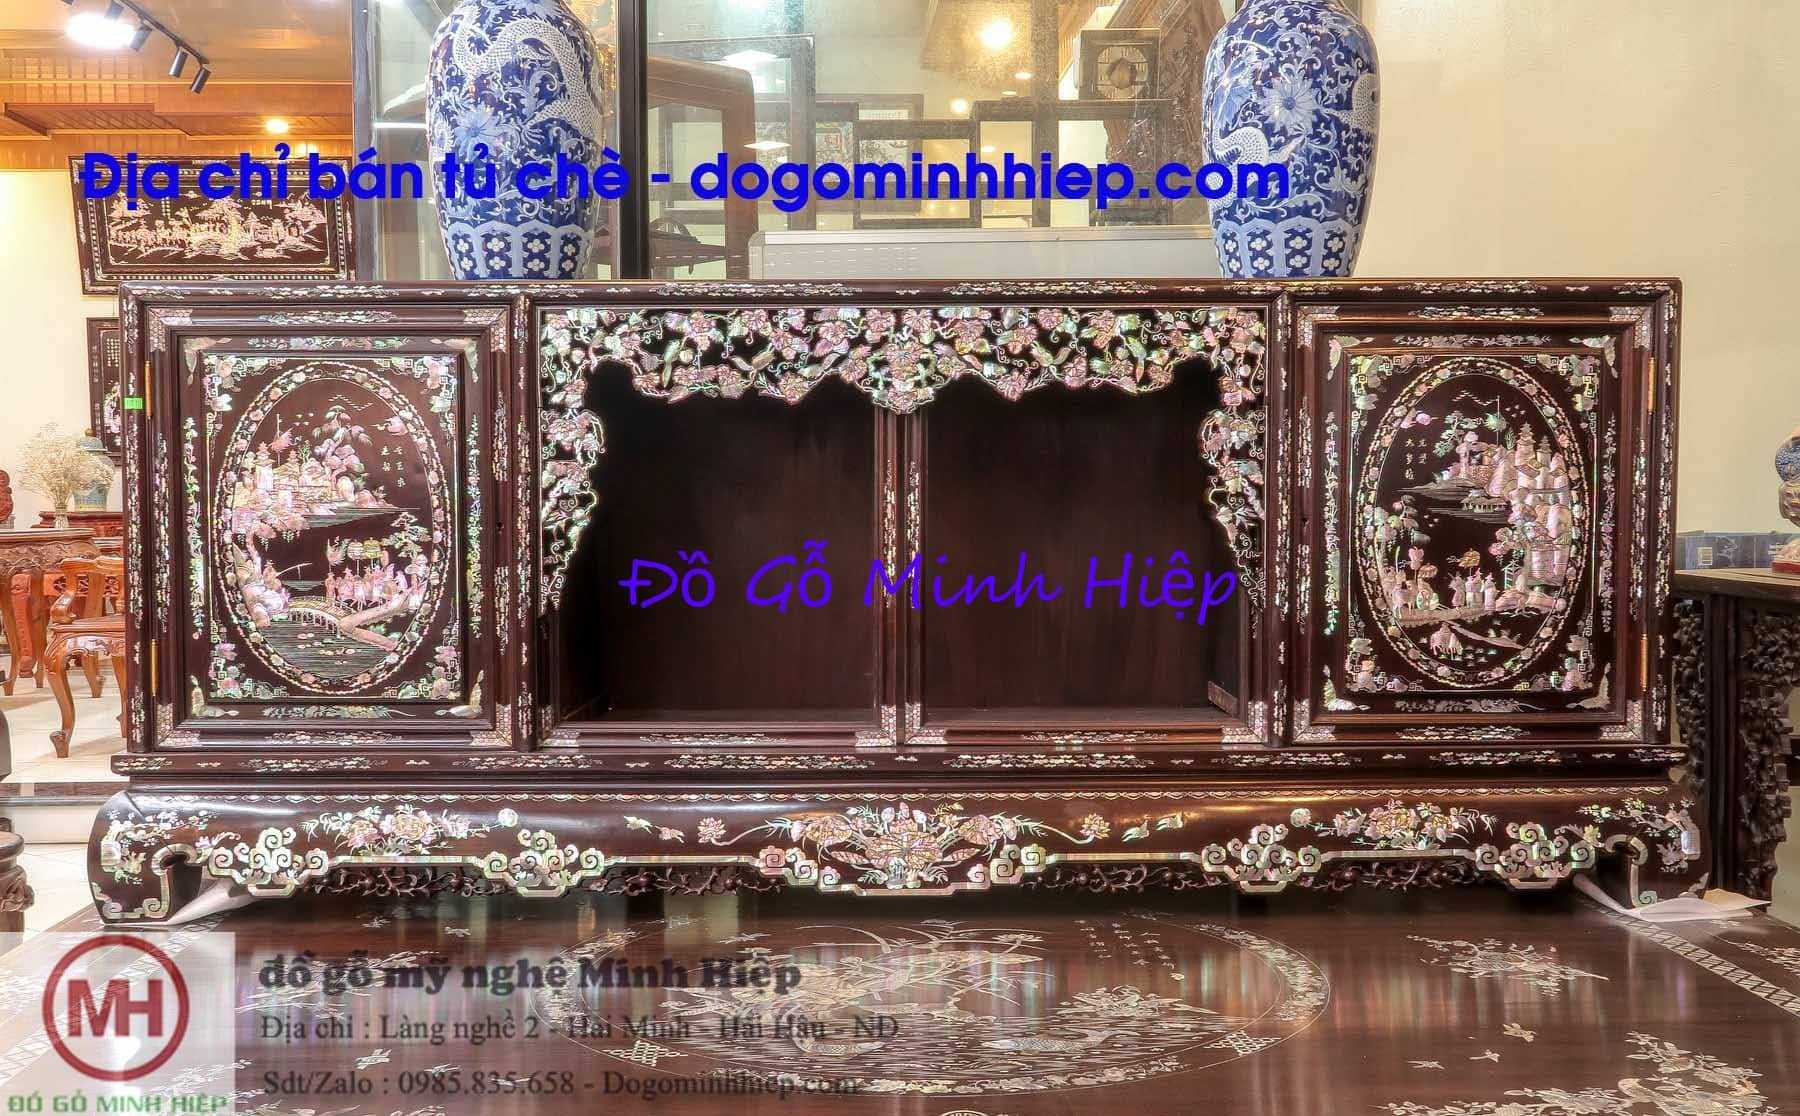 Tủ chè cổ đẹp: Tủ chè thường được xem như biểu tượng của sự sang trọng và văn minh trong nền văn hóa trà Việt Nam. Quý khách hãy tìm hiểu và khám phá những bức ảnh về tủ chè cổ đẹp nhất tại Việt Nam cùng chúng tôi.